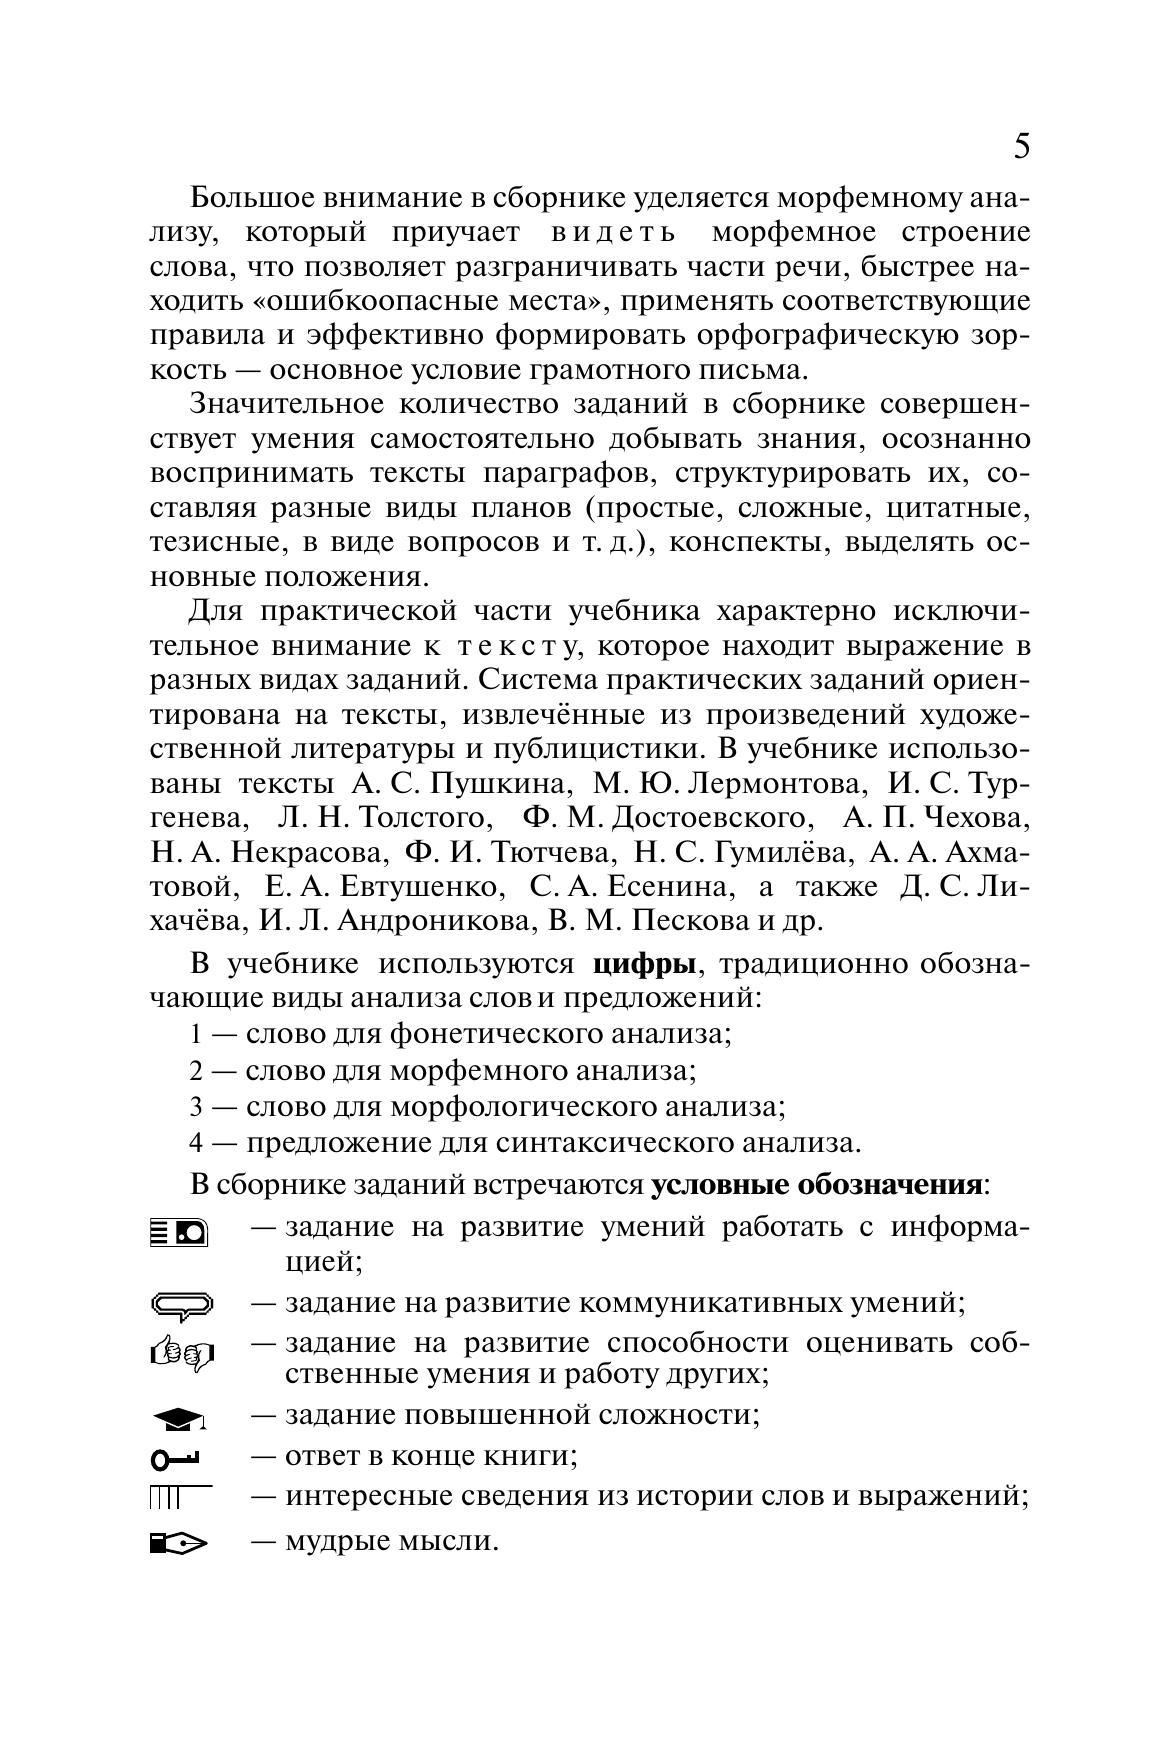 Русский язык. 10-11 классы. Учебник. Углублённый уровень 11